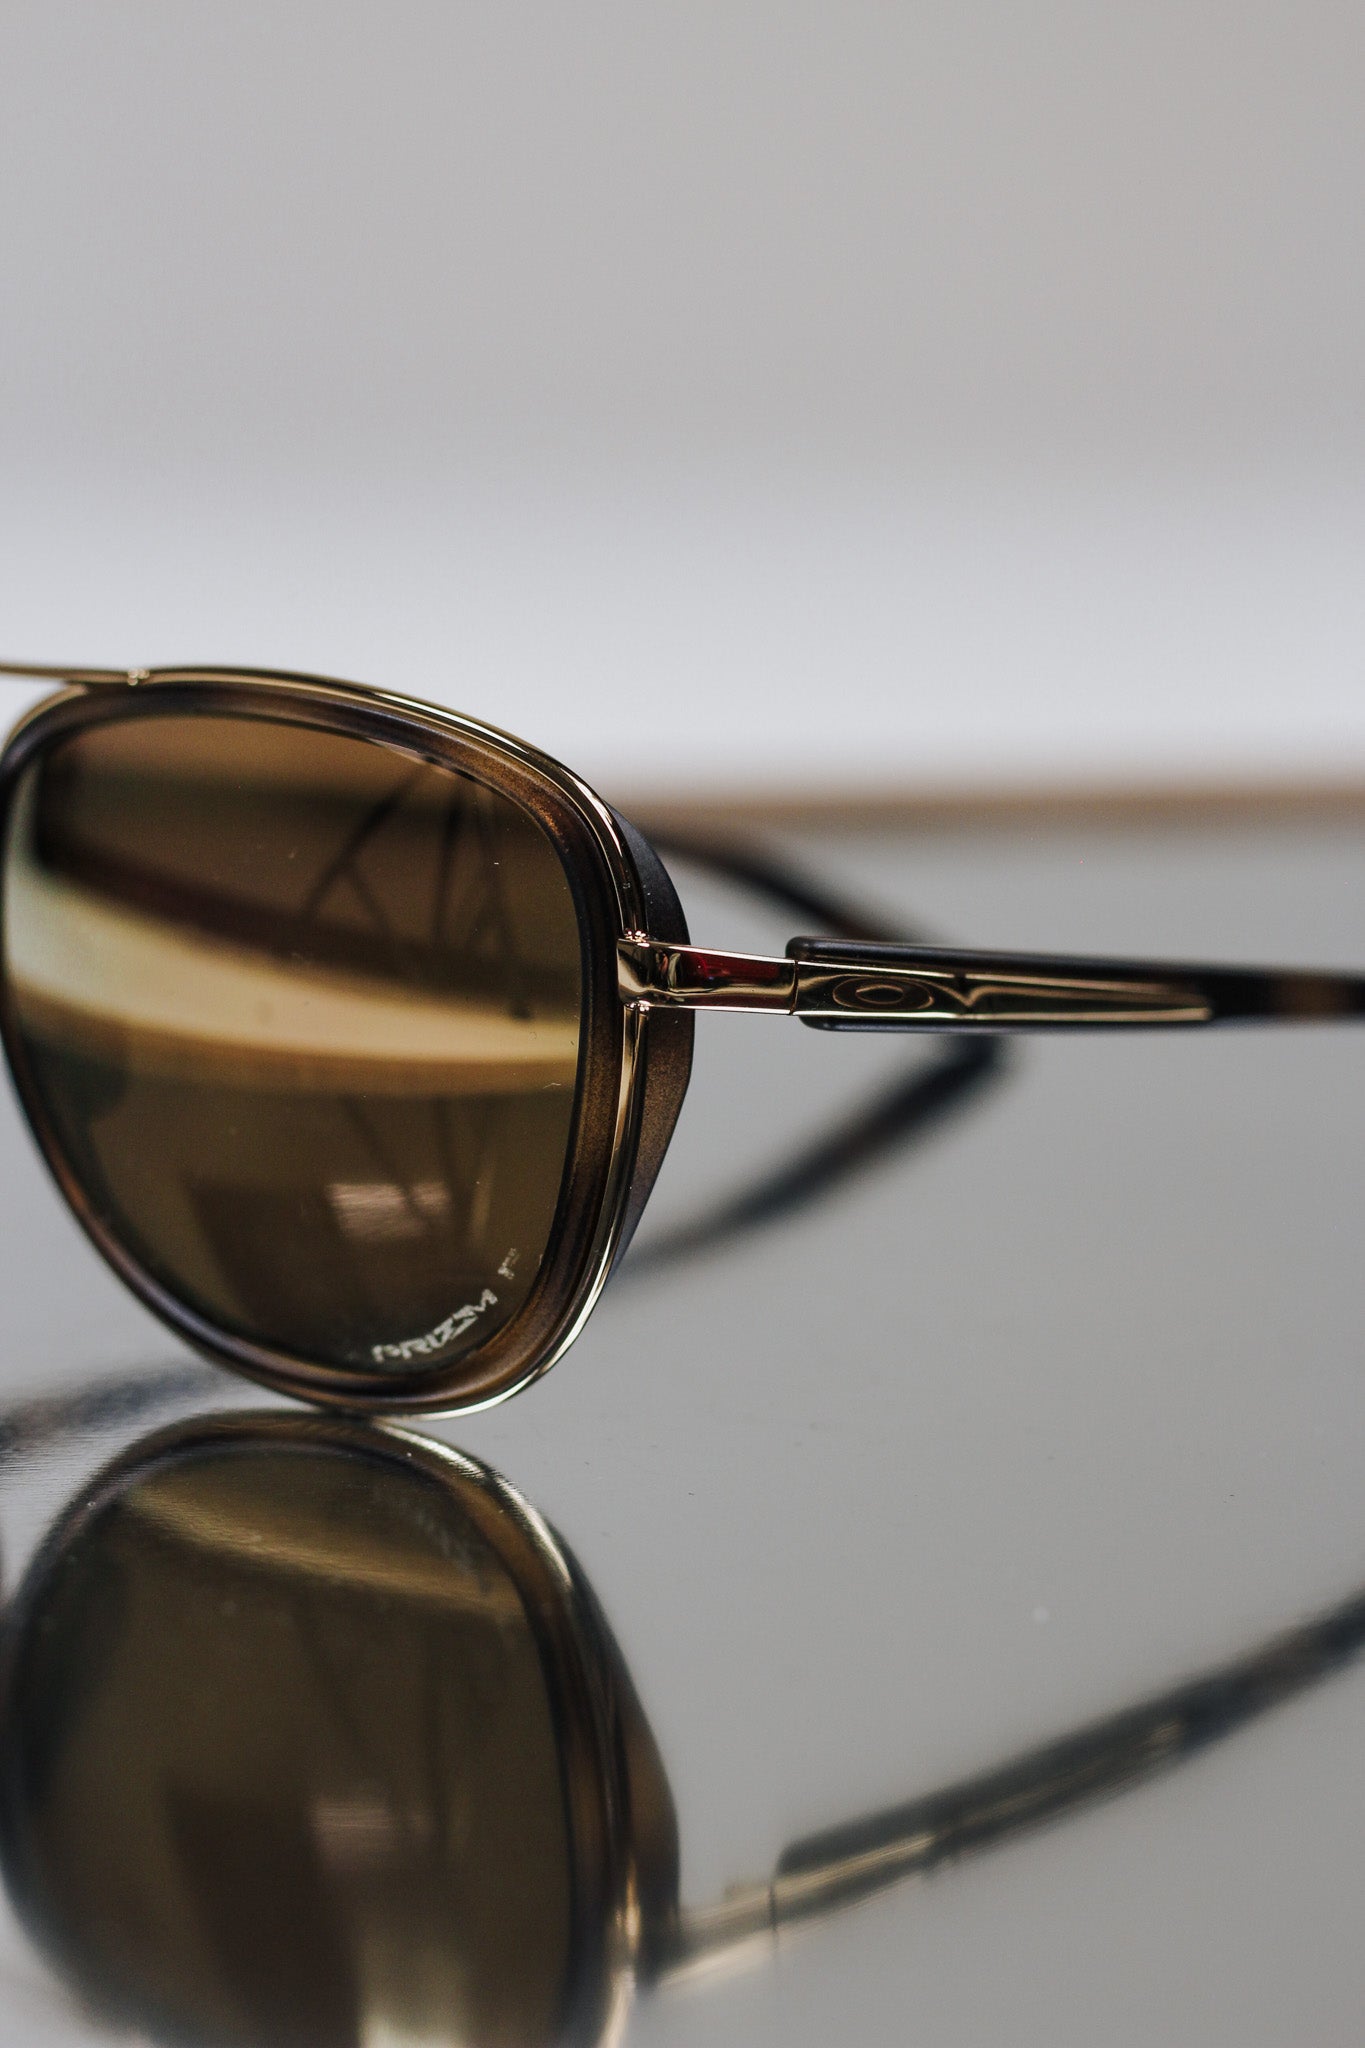 Split Time Sunglasses By Oakley